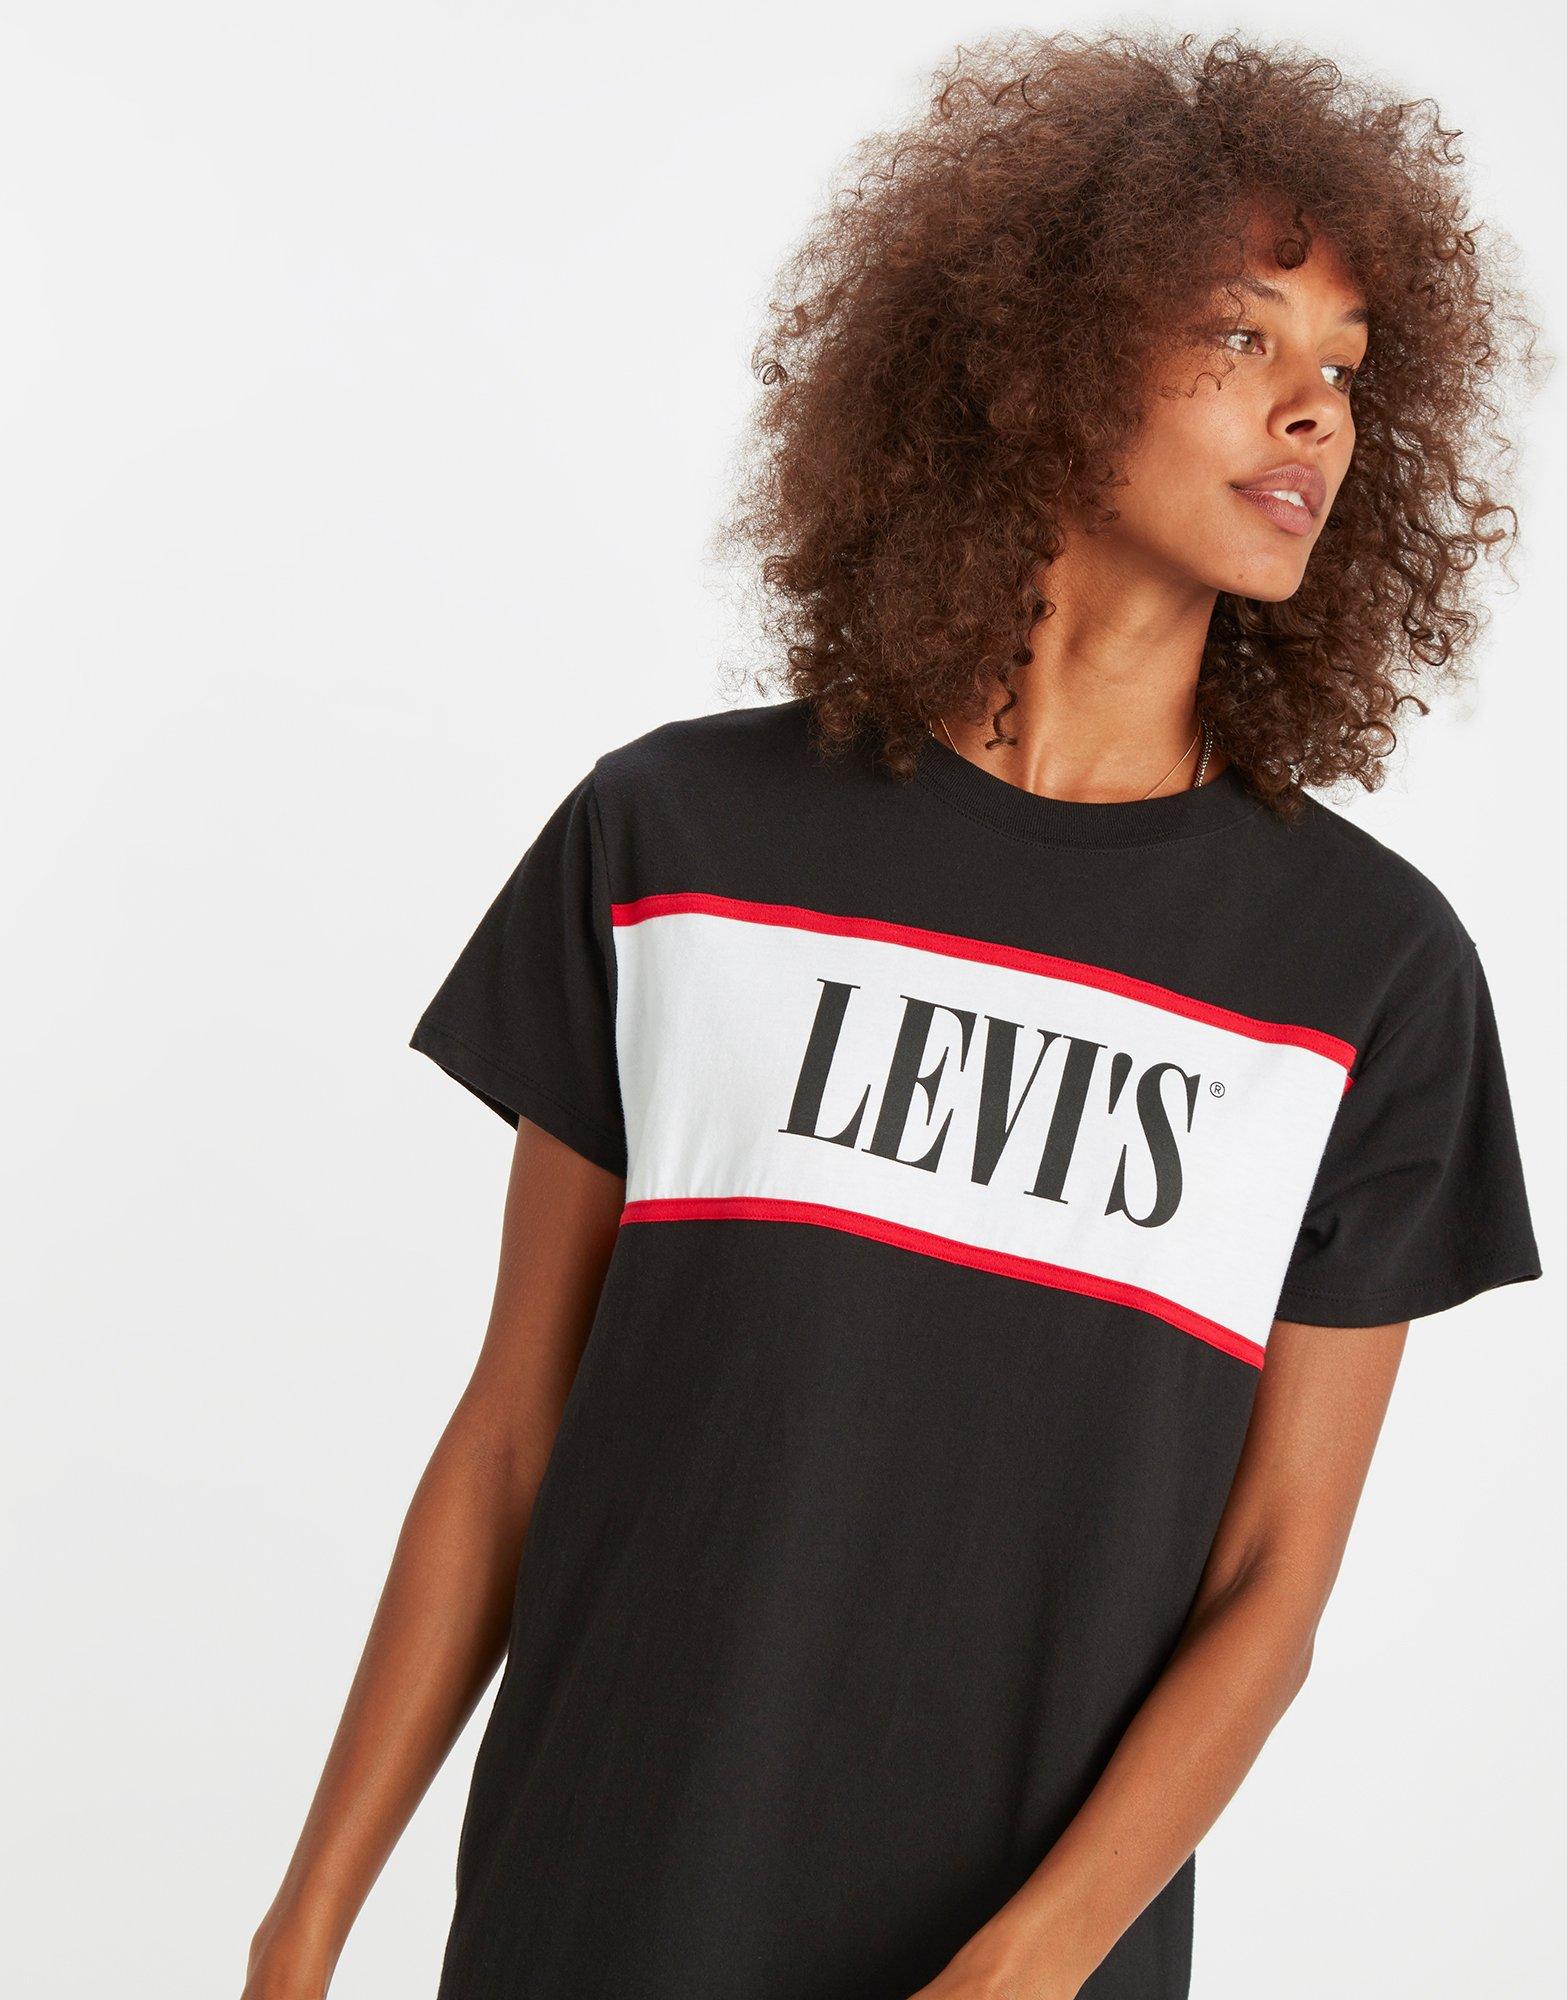 levis t shirt dress